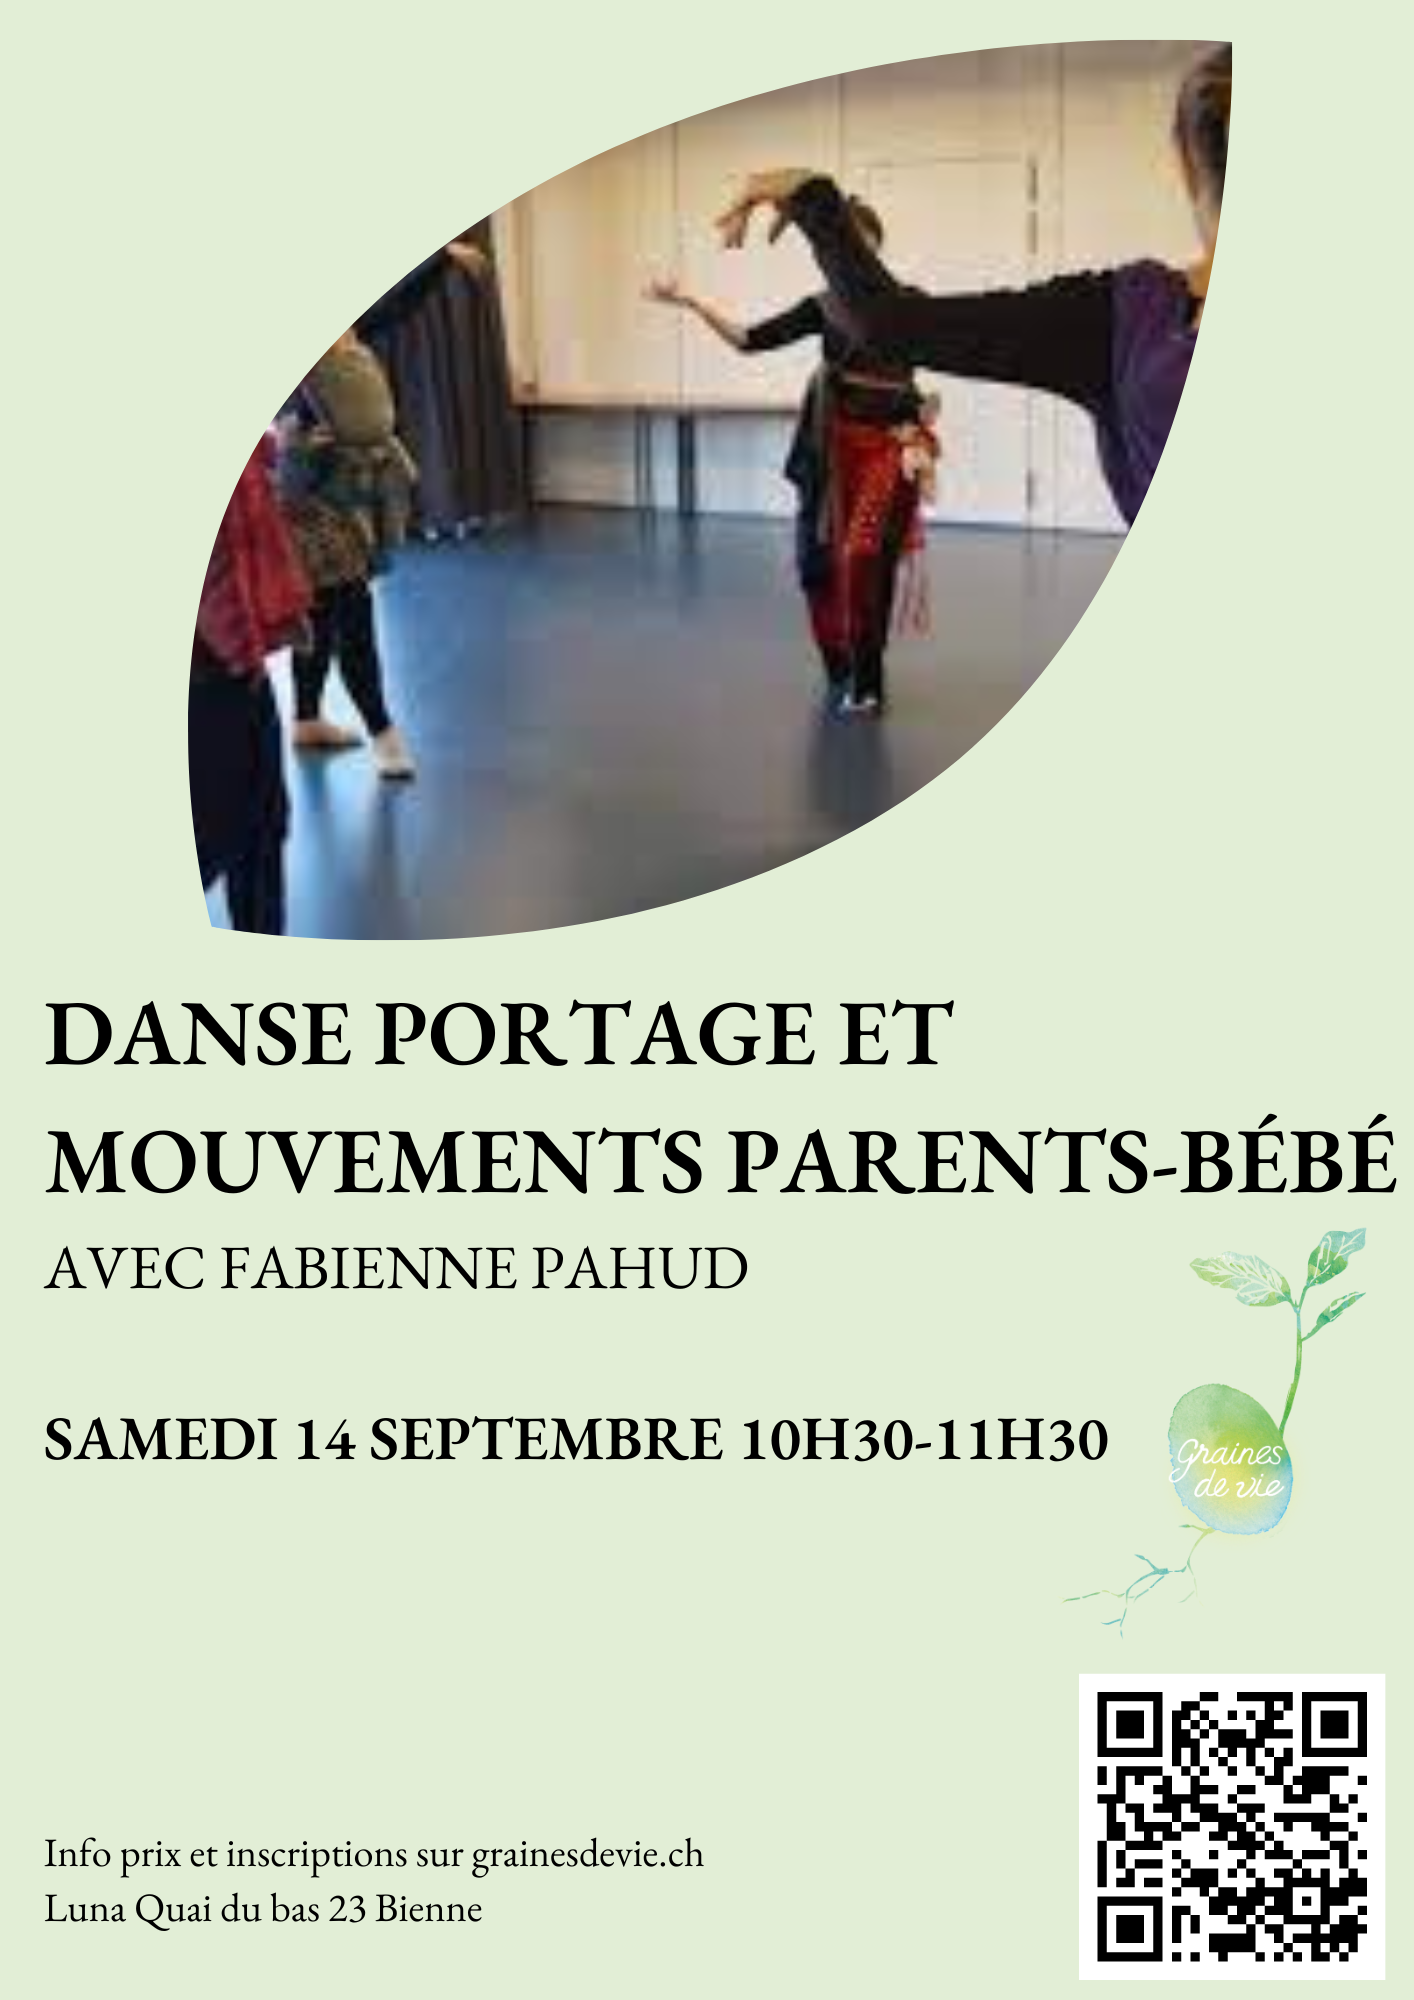 Danse portage et mouvements parents-bébé